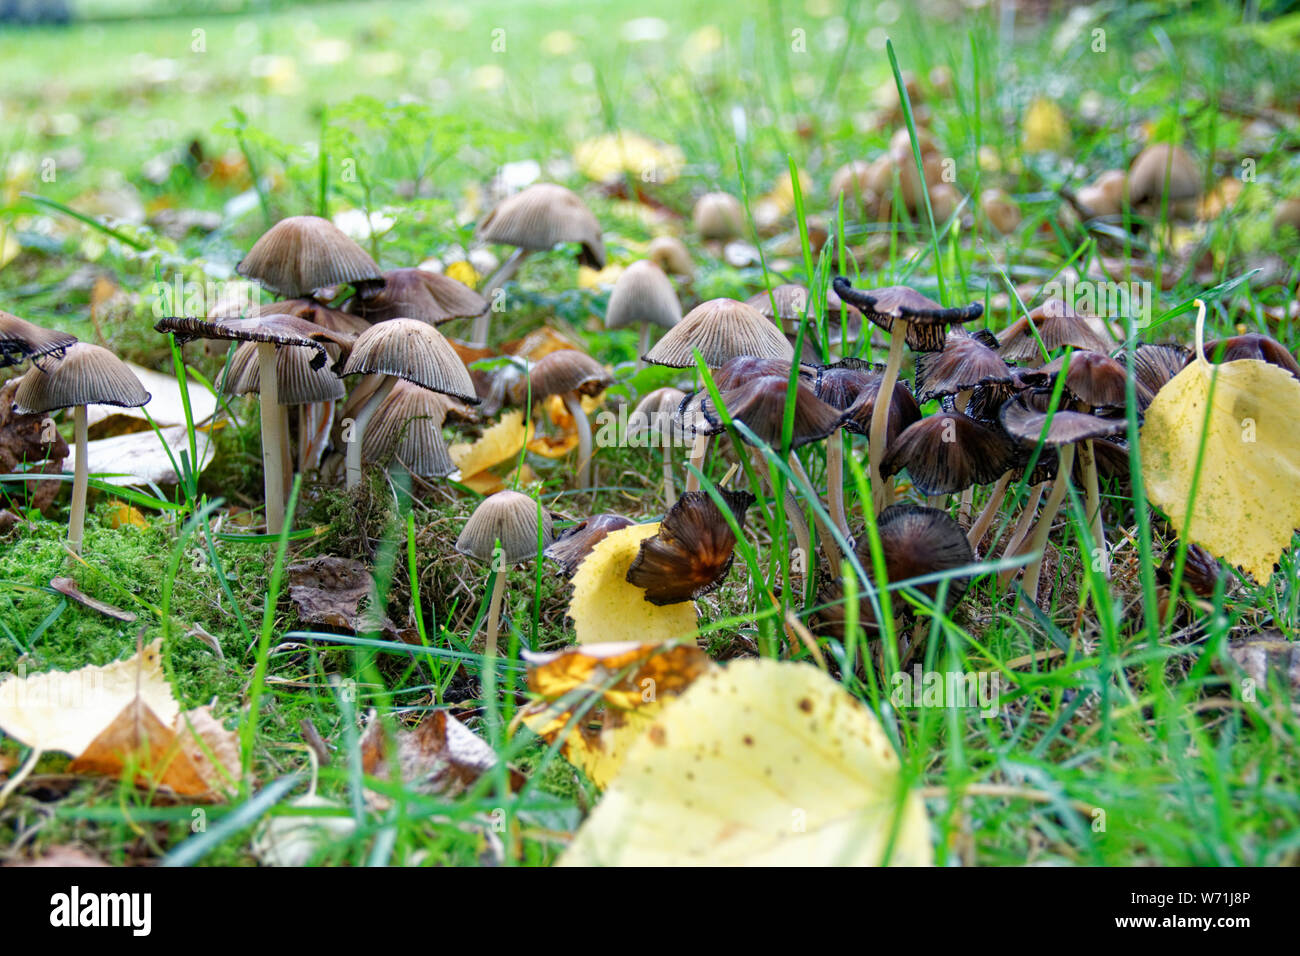 Braun mottlegill Pilze Pilze wachsen durch Gras und Blätter im Herbst Streuung den Boden um Sie herum Stockfoto